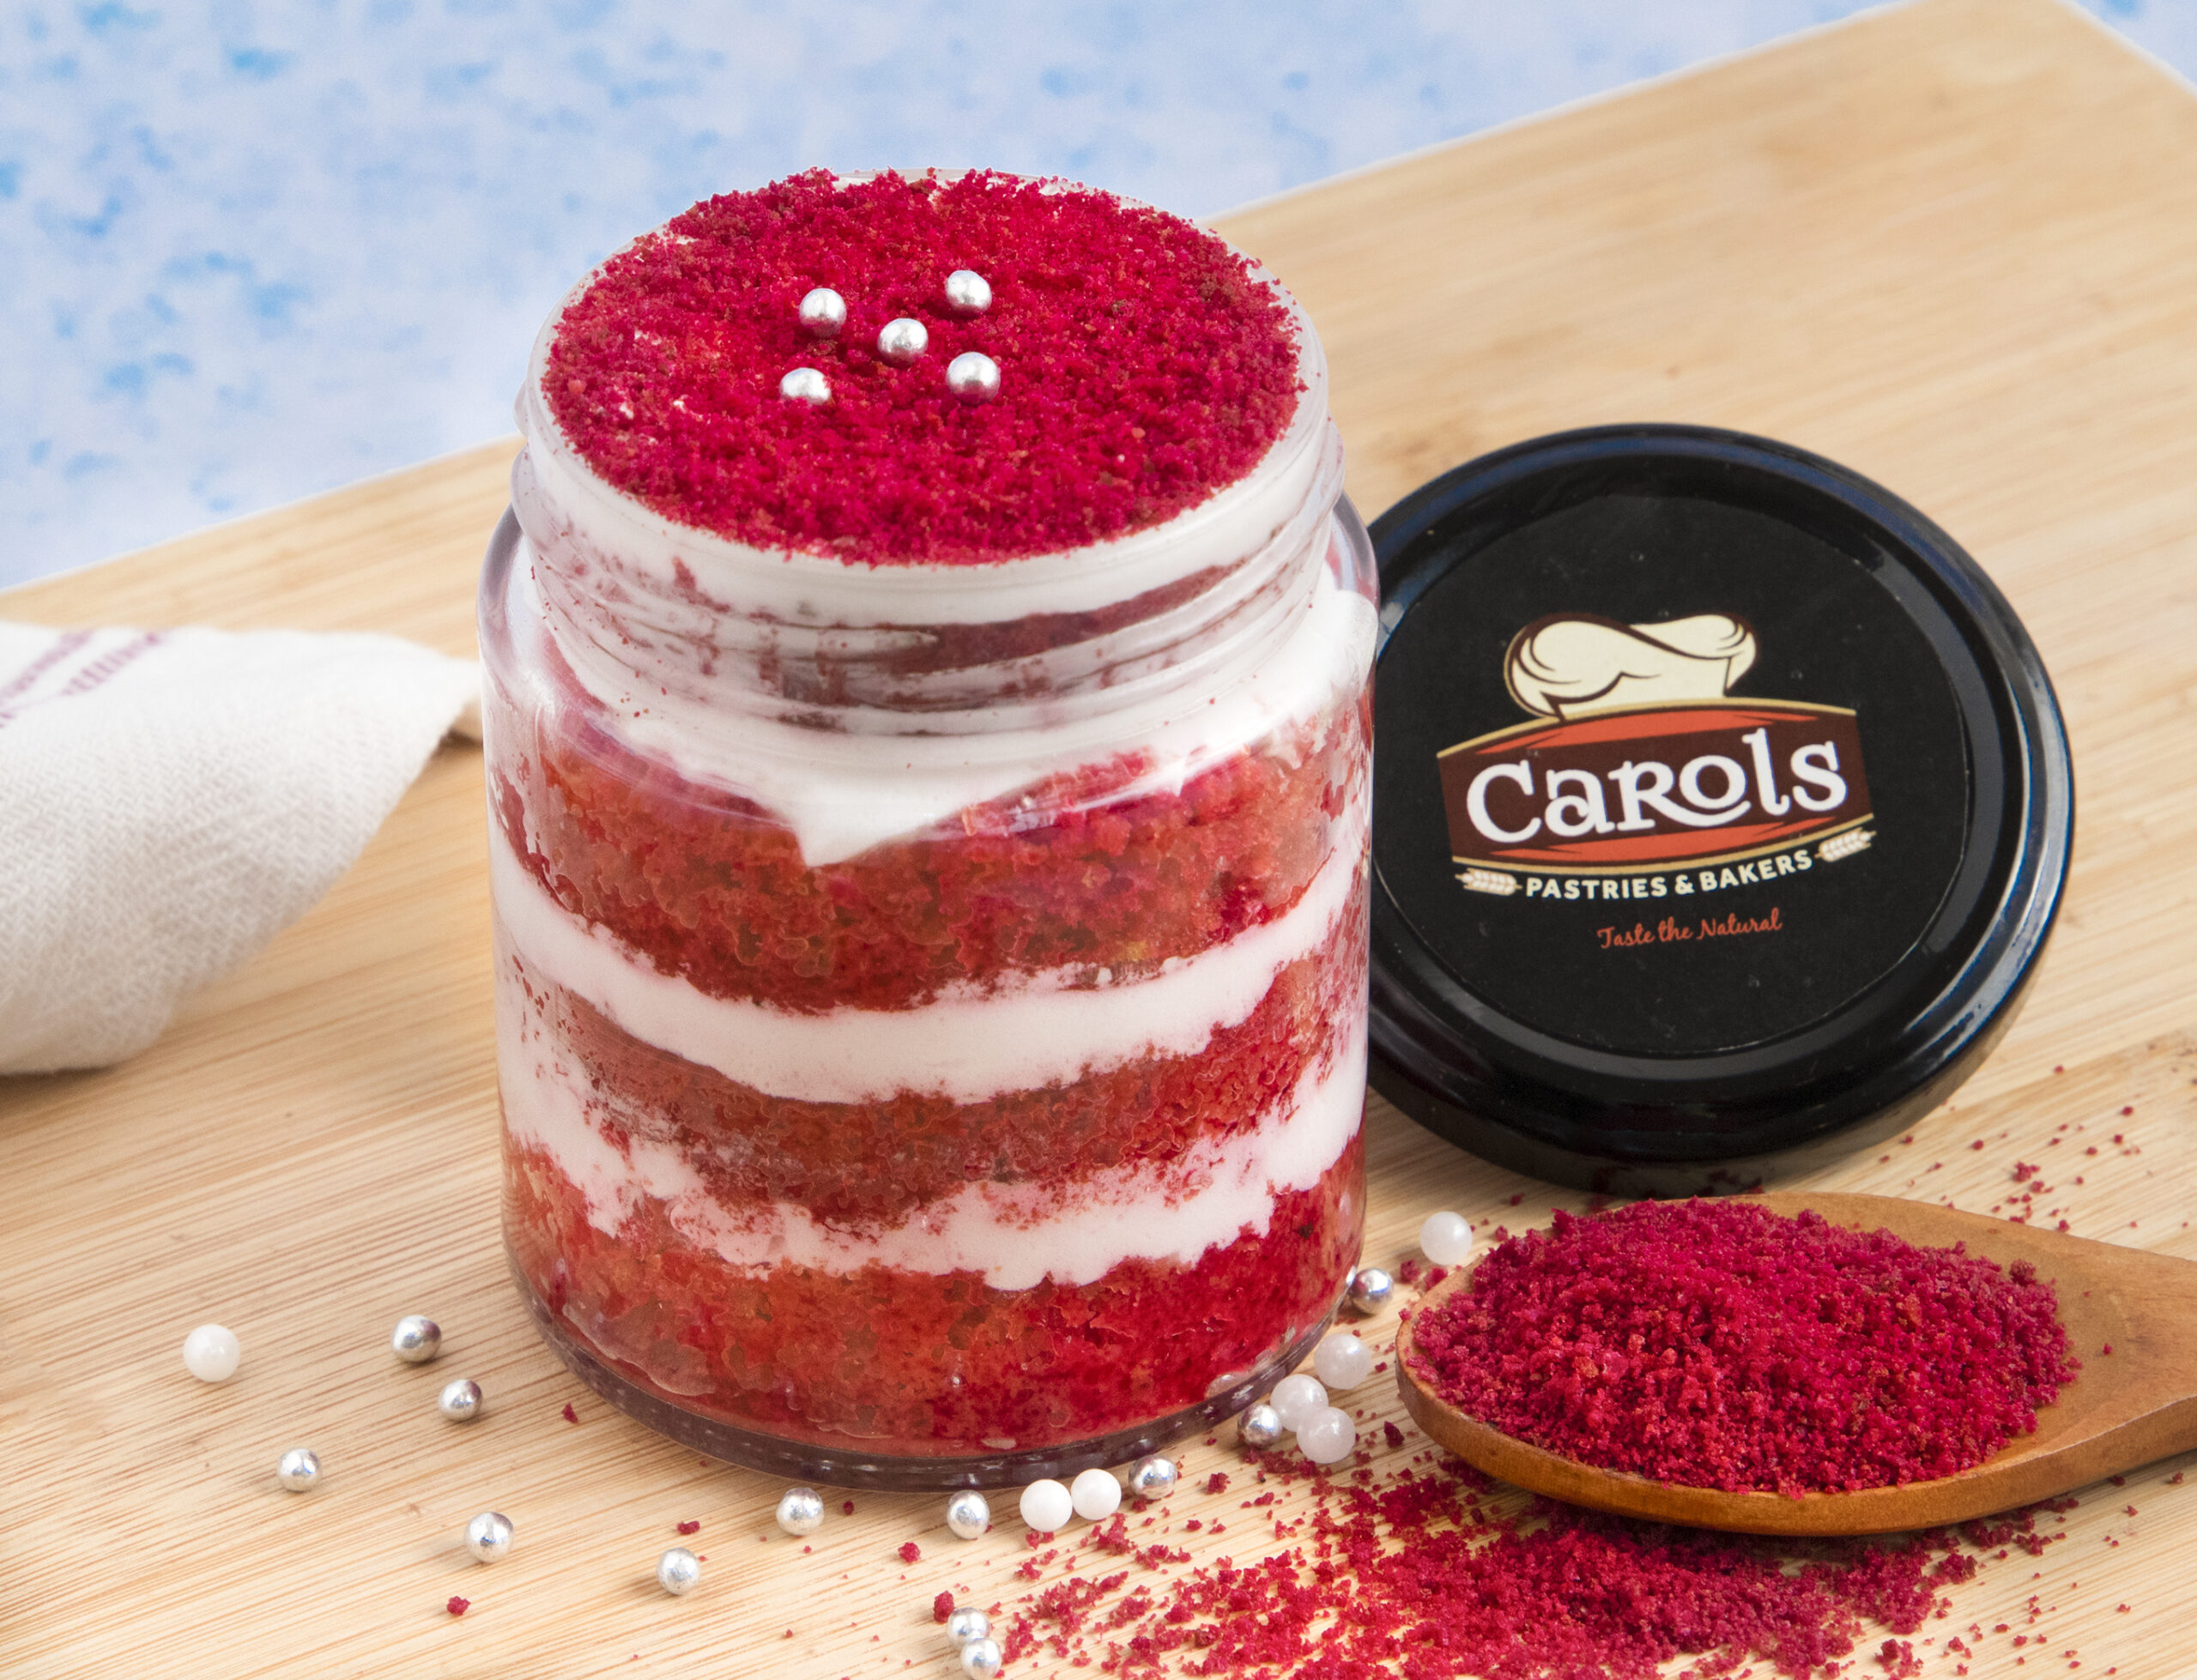 Crimson & Cream Cake in a Jar - Moonlight Cakes